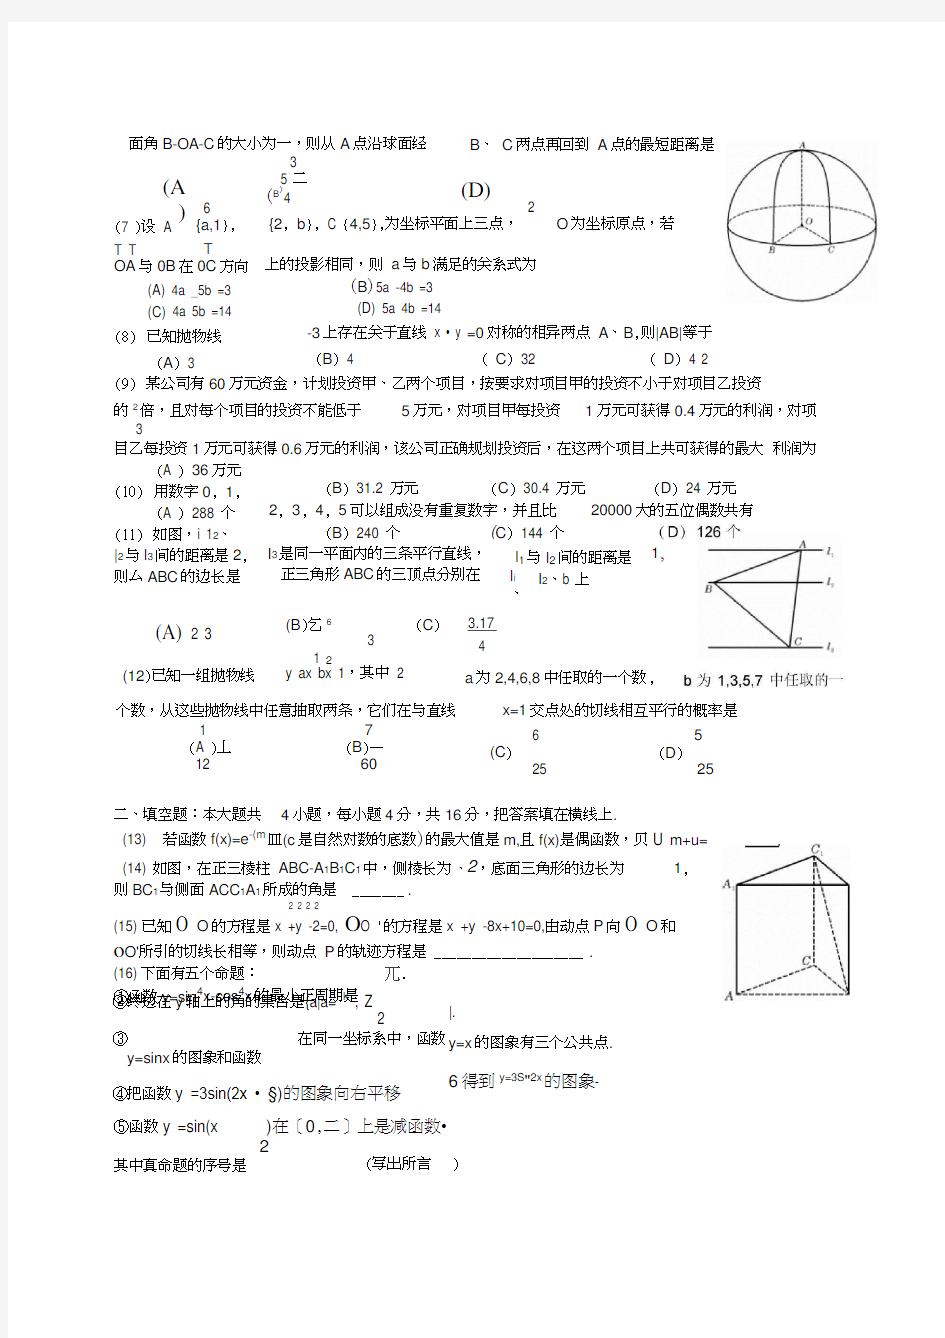 2007年四川高考理科数学试卷和答案详解